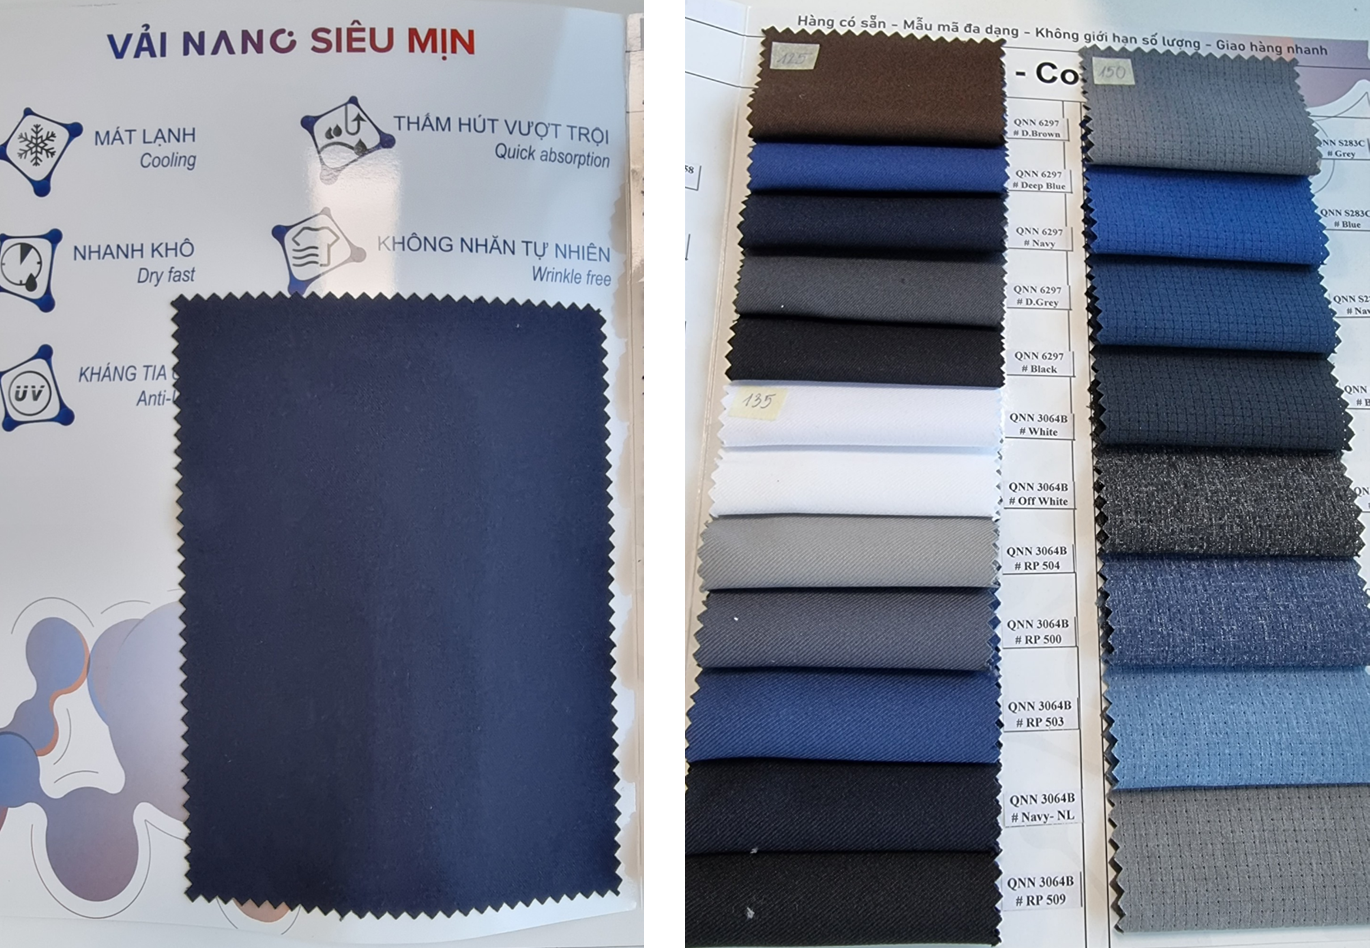 Vải Nano cũng là dòng chất liệu với ưu điểm nổi trội khi ứng dụng vào may đồng phục tư vấn viên spa.